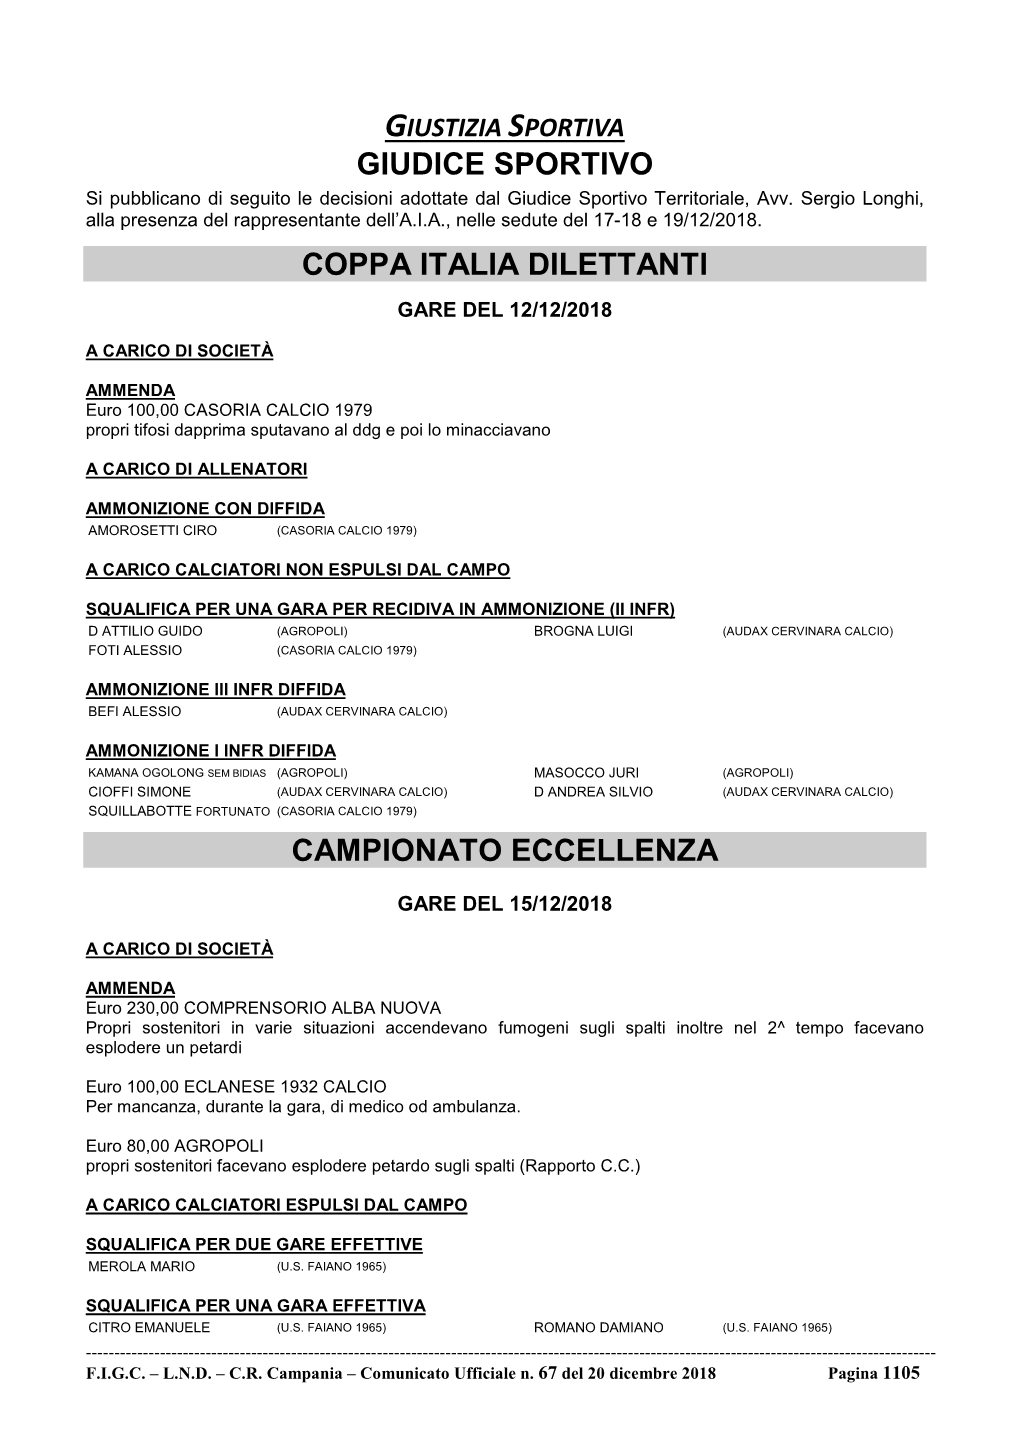 Giudice Sportivo Coppa Italia Dilettanti Campionato